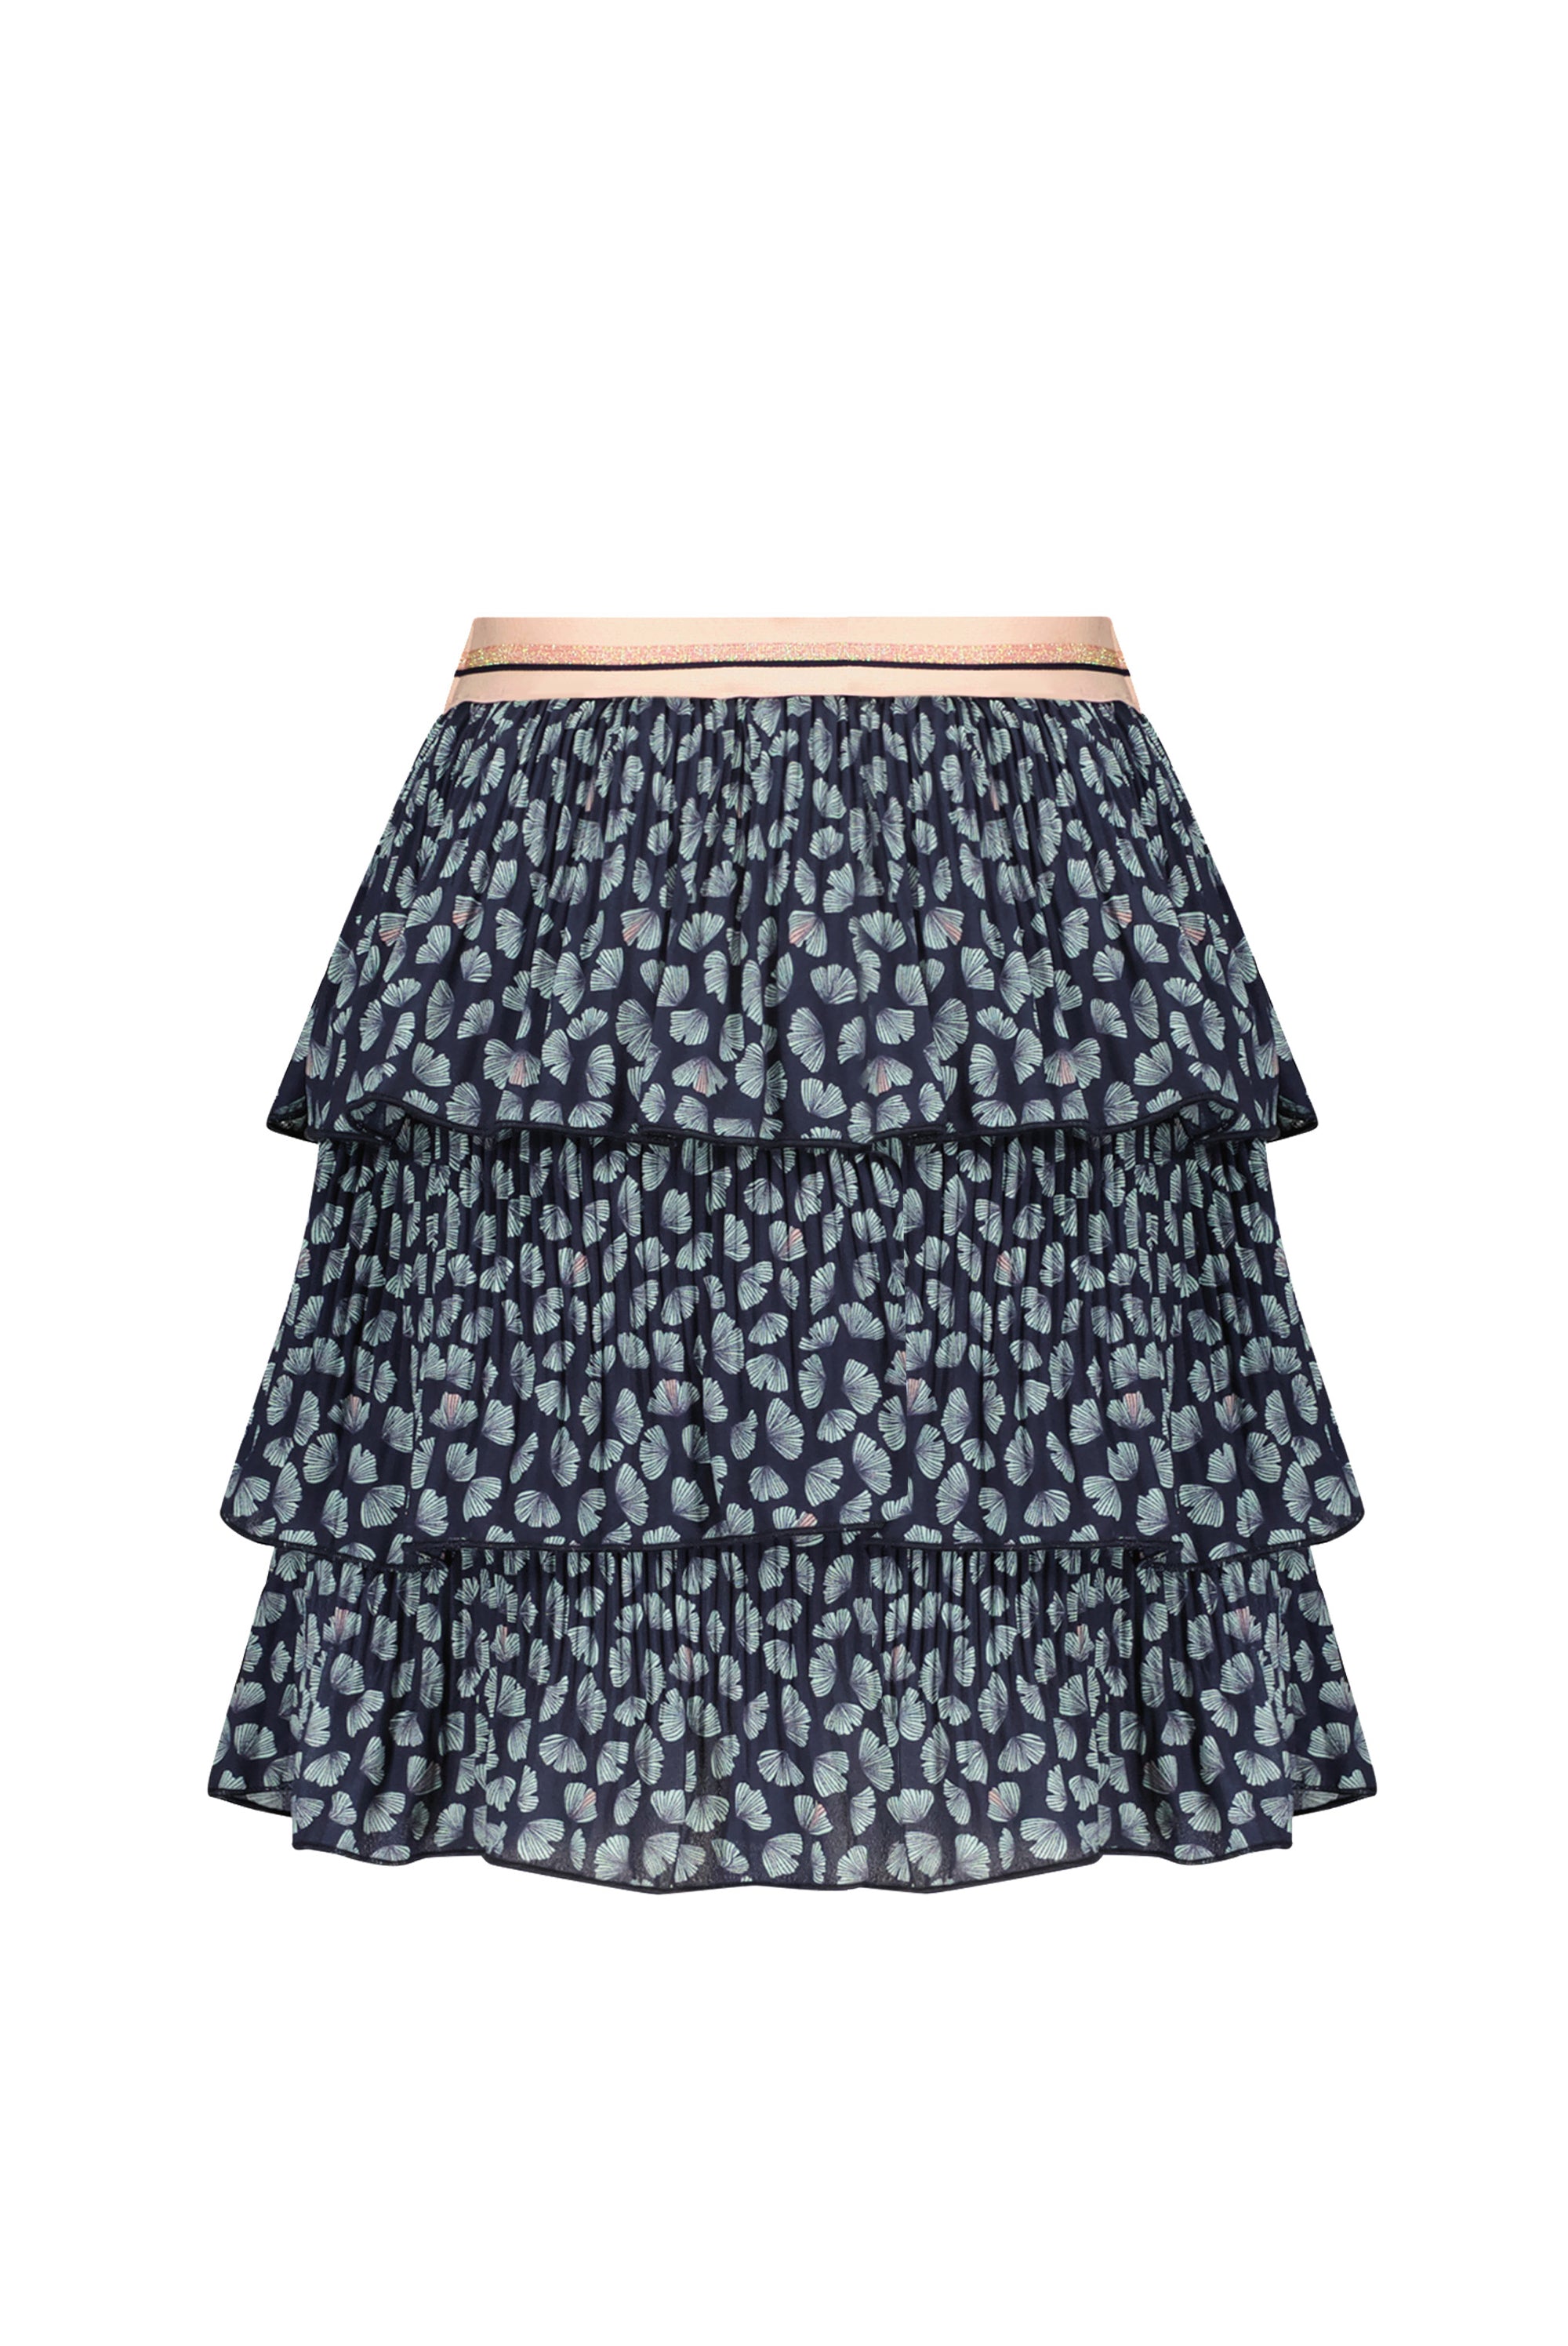 Meisjes Nika 3 layered short skirt van NoNo in de kleur Navy Blazer in maat 134-140.